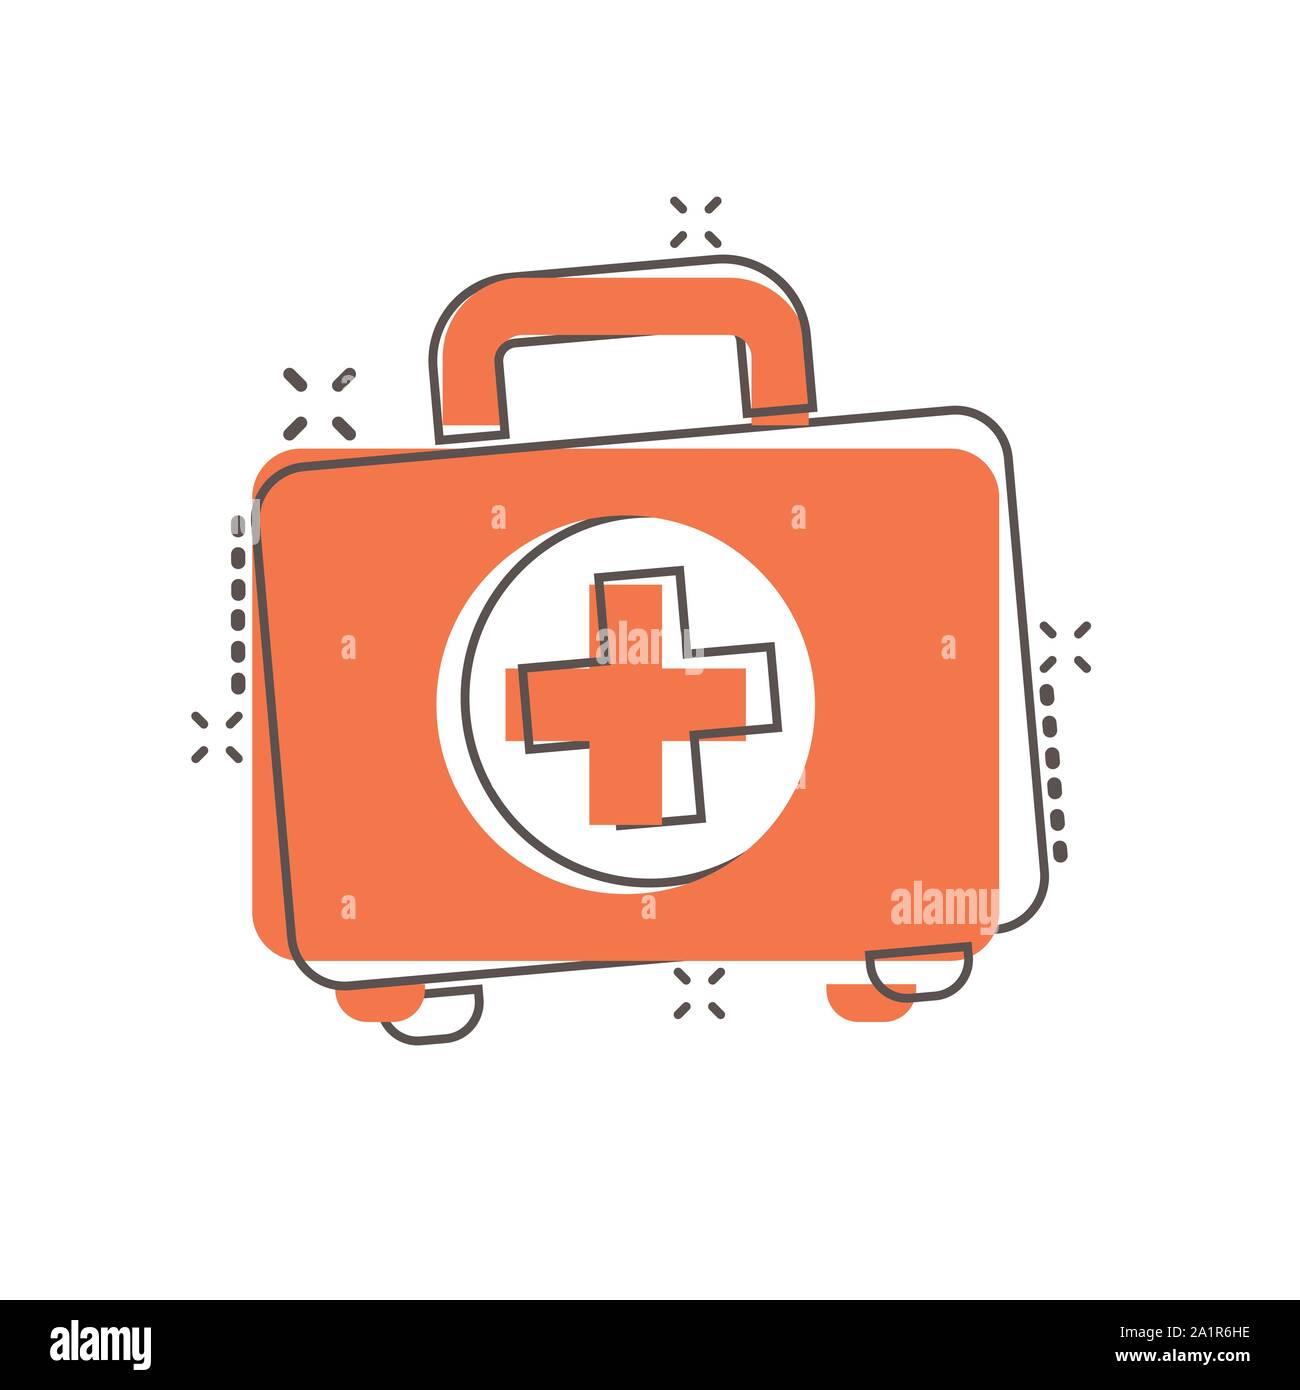 primo aiuto kit emergenza scatola medico Aiuto valigia icona 28149330 PNG